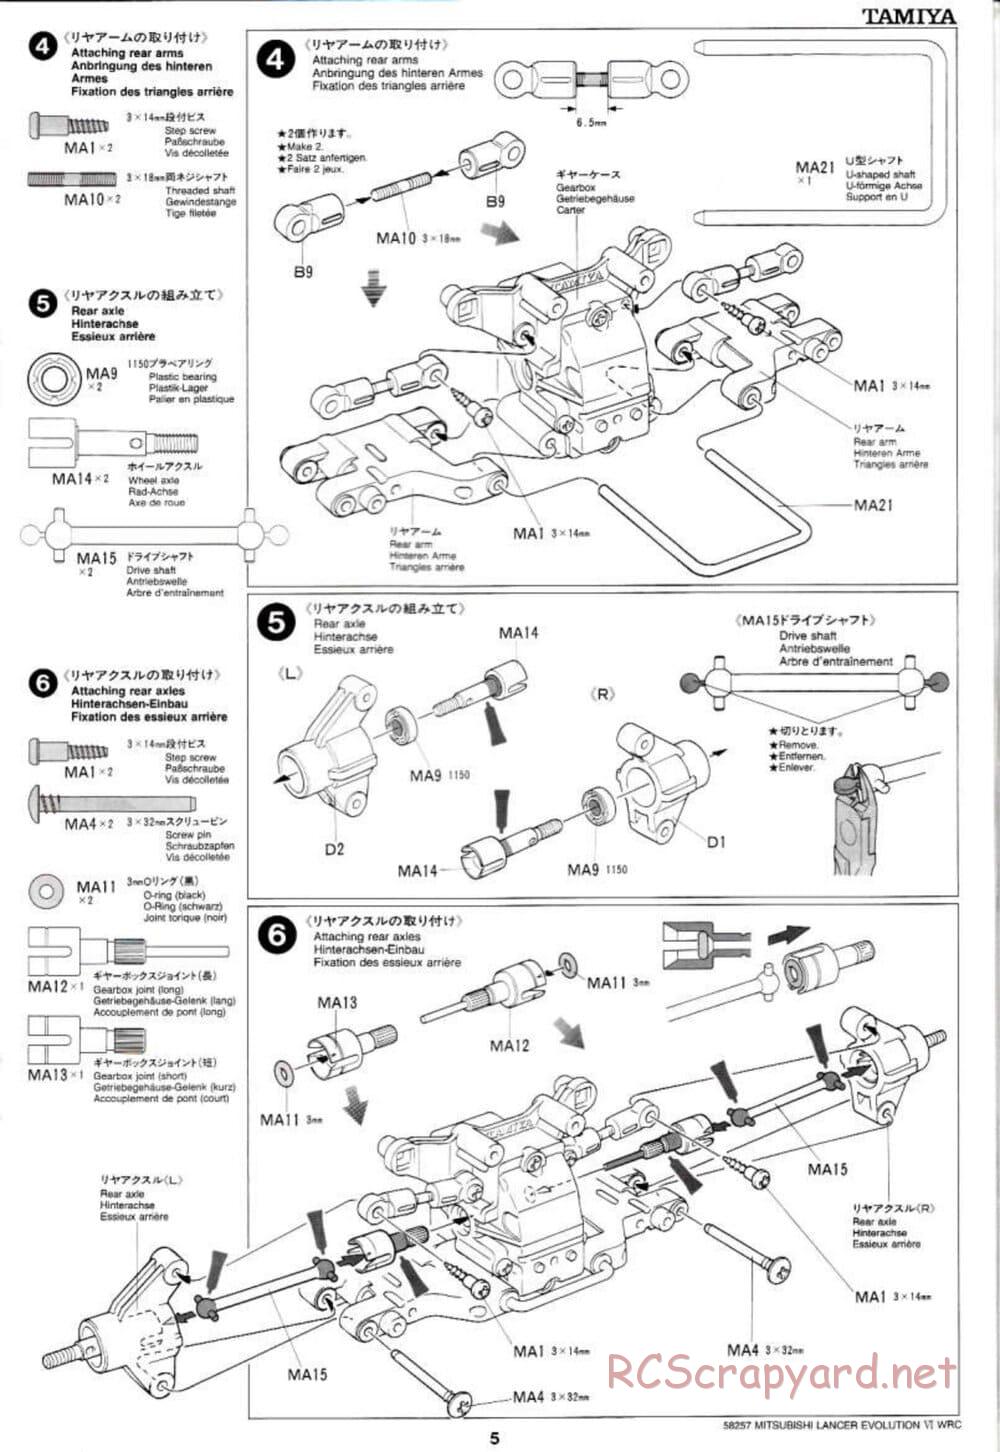 Tamiya - Mitsubishi Lancer Evolution VI WRC - TB-01 Chassis - Manual - Page 5